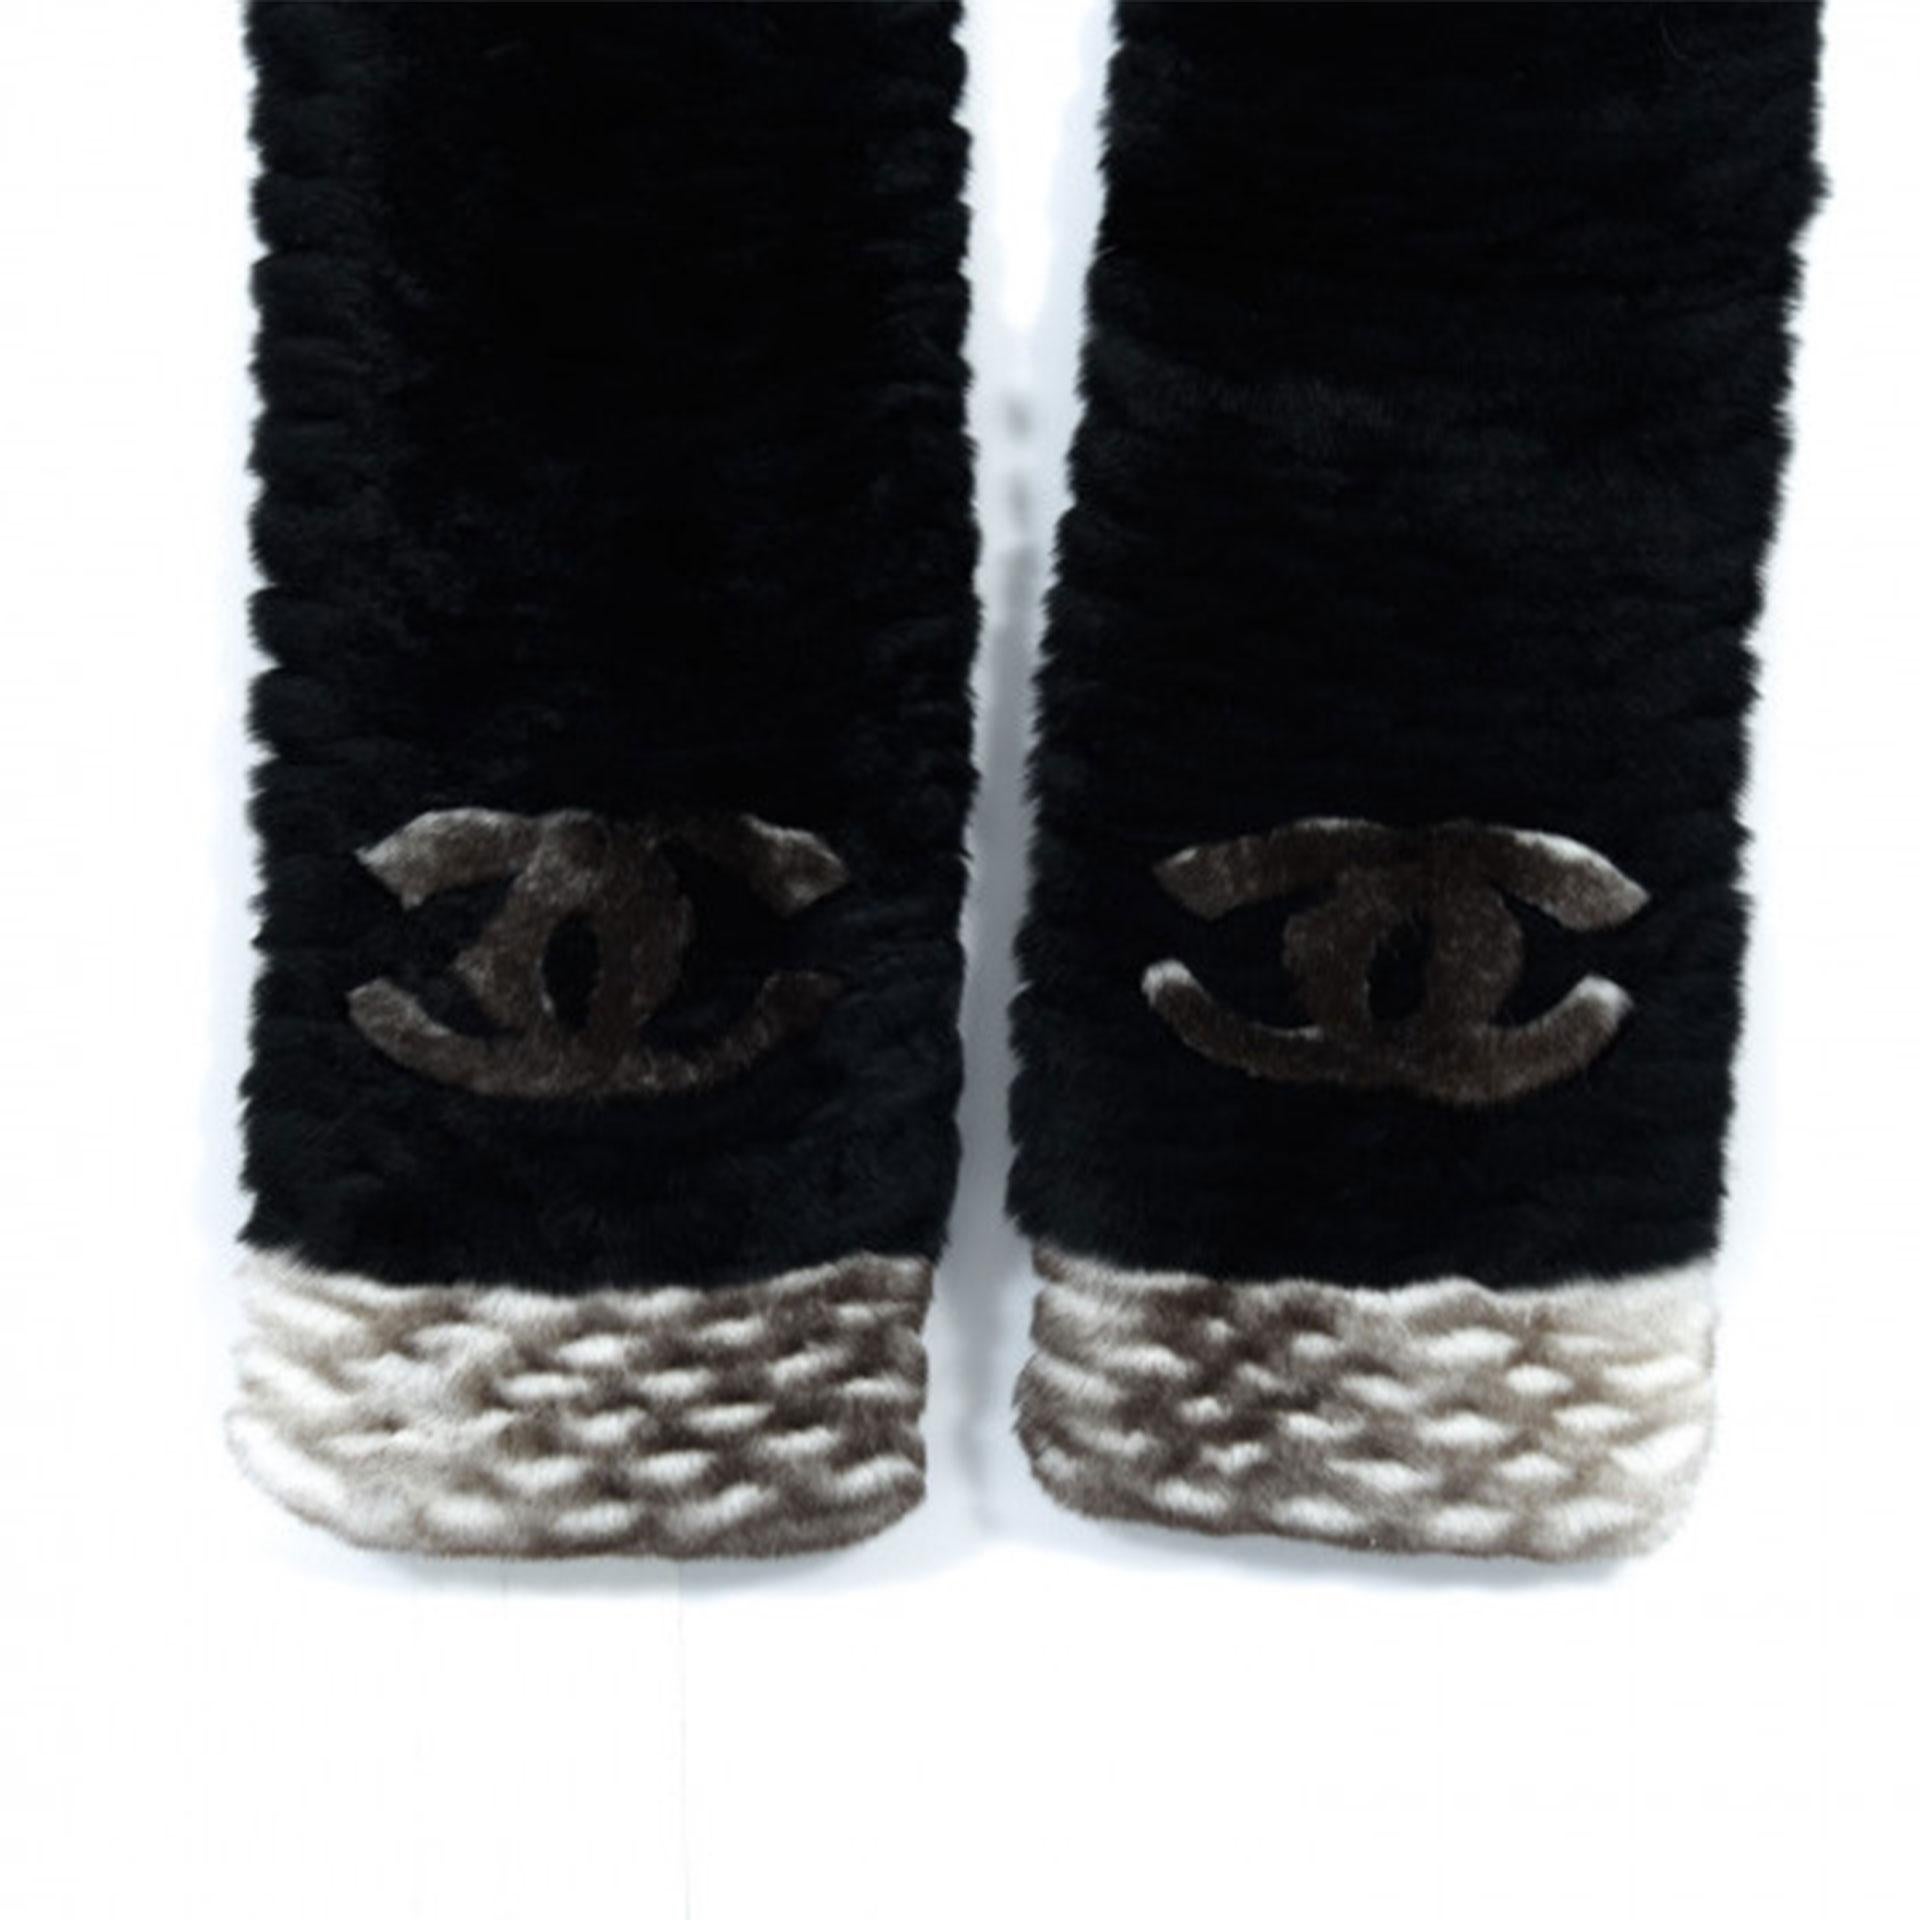 Chanel Black Elegant Orylag Rabbit Fur CC Scarf 